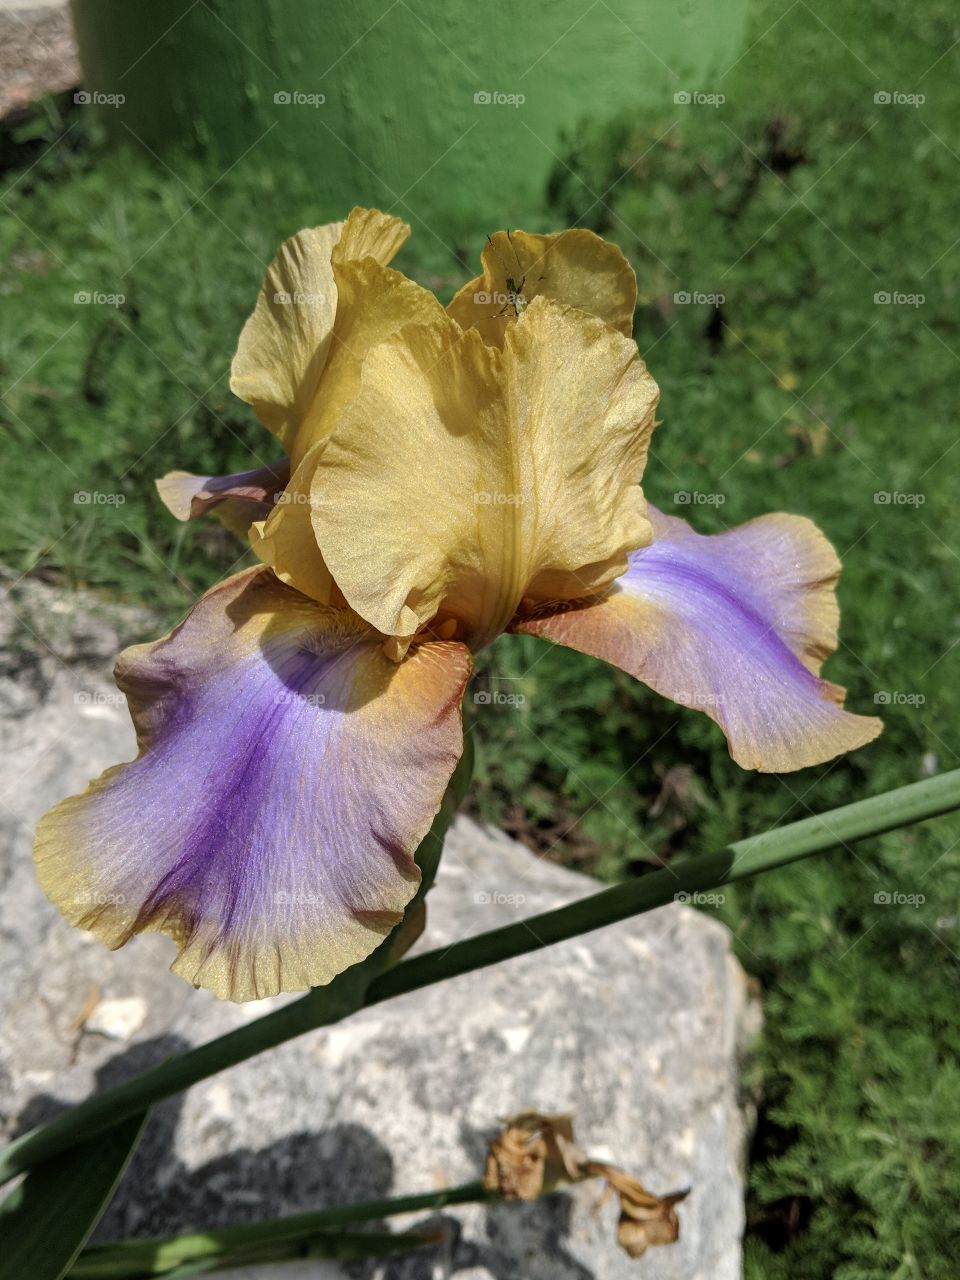 stunning bearded iris